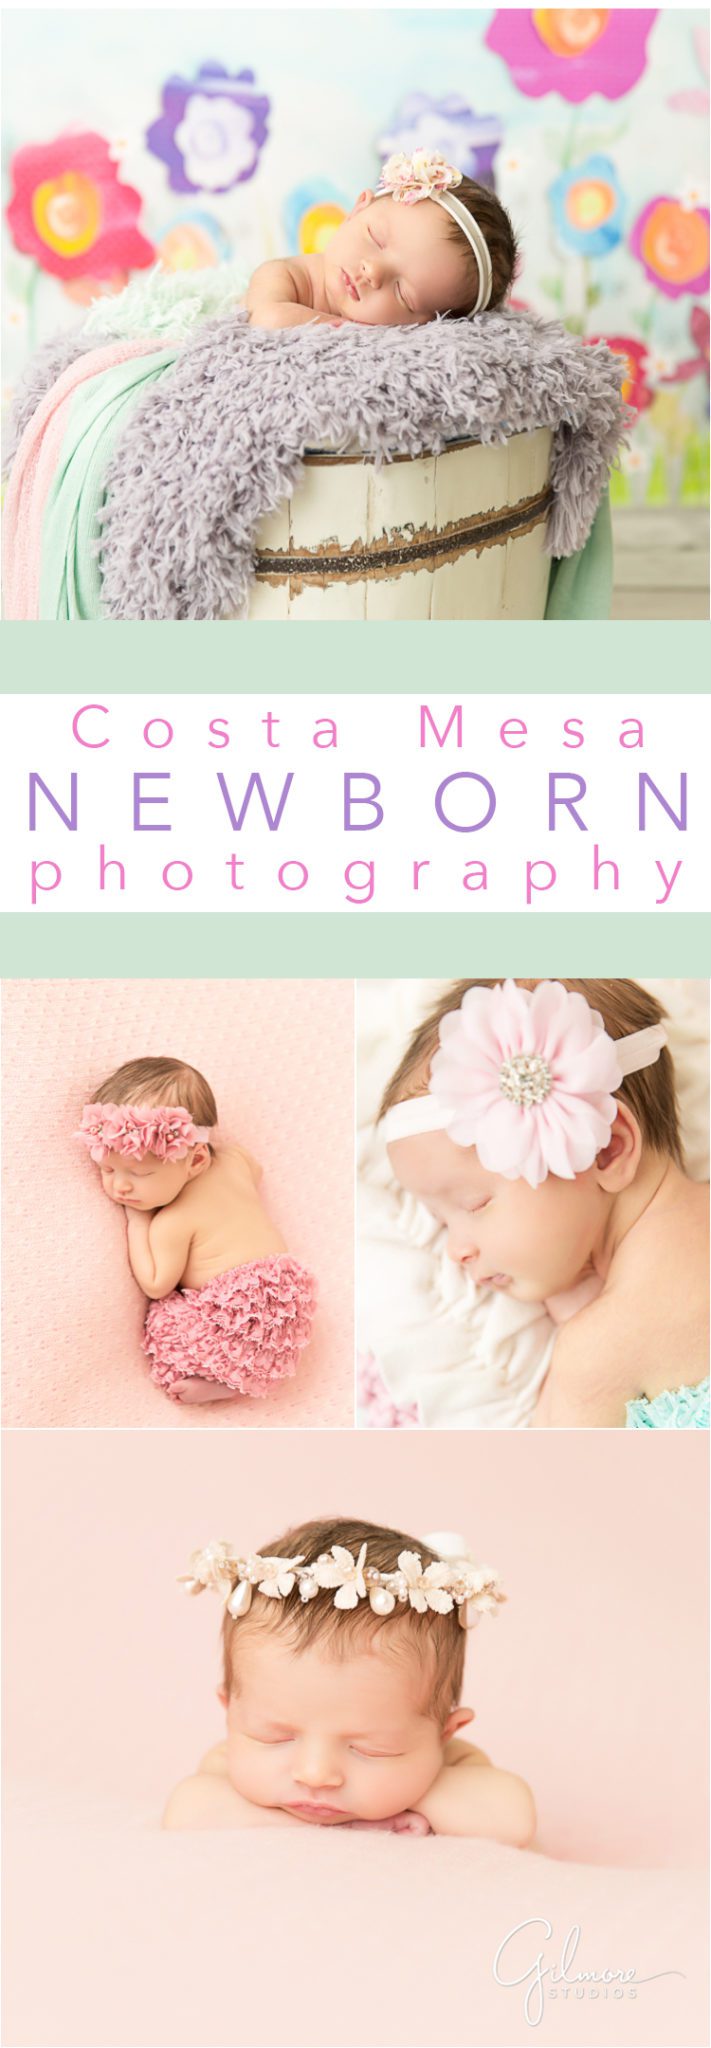 Newport Beach family newborn photographer